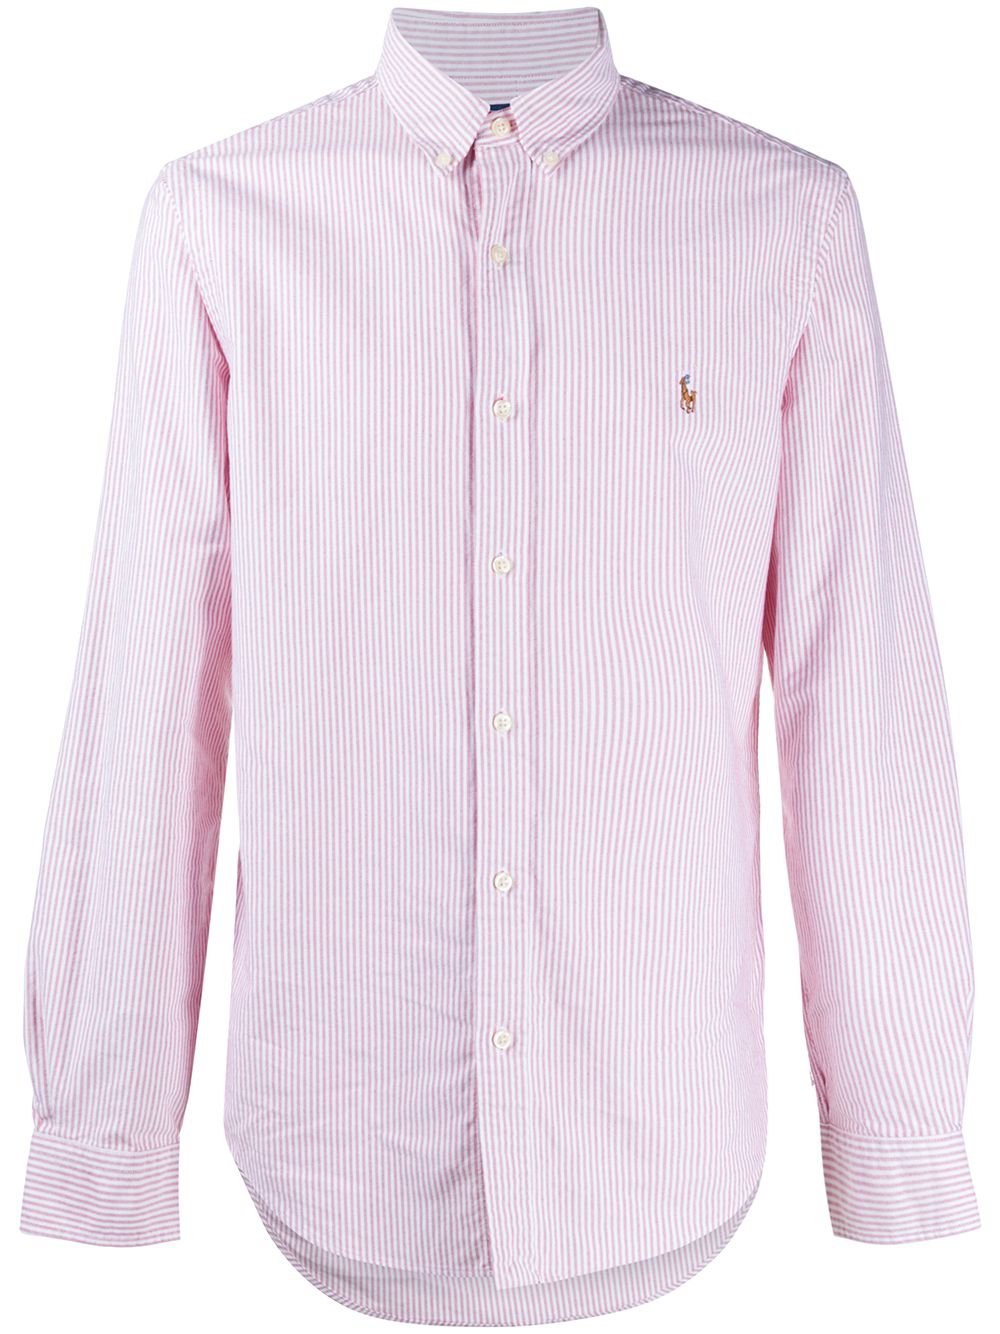 Рубашка нейтральных цветов. Розовая рубашка в полоску